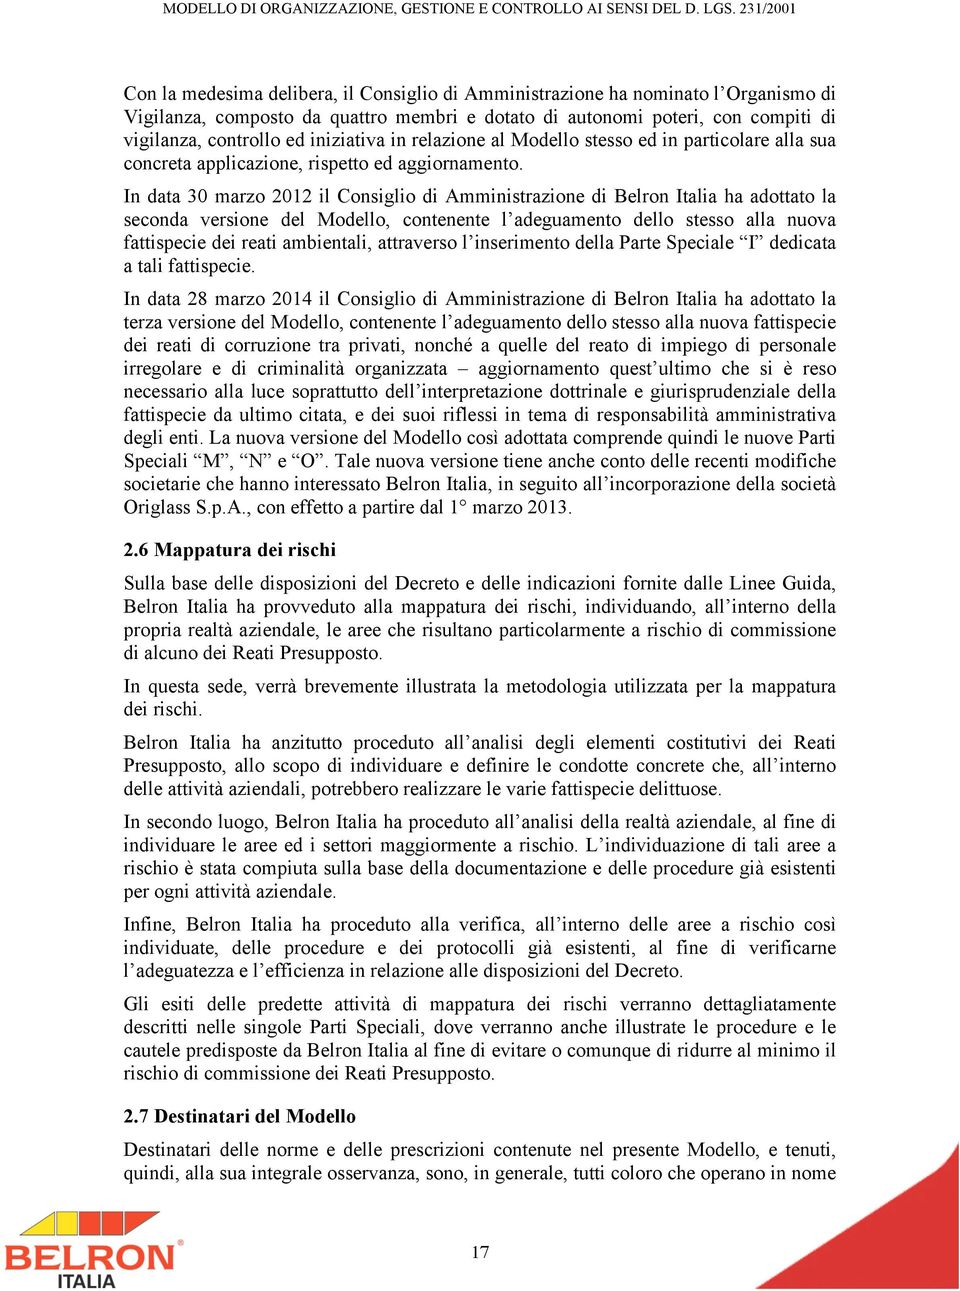 In data 30 marzo 2012 il Consiglio di Amministrazione di Belron Italia ha adottato la seconda versione del Modello, contenente l adeguamento dello stesso alla nuova fattispecie dei reati ambientali,